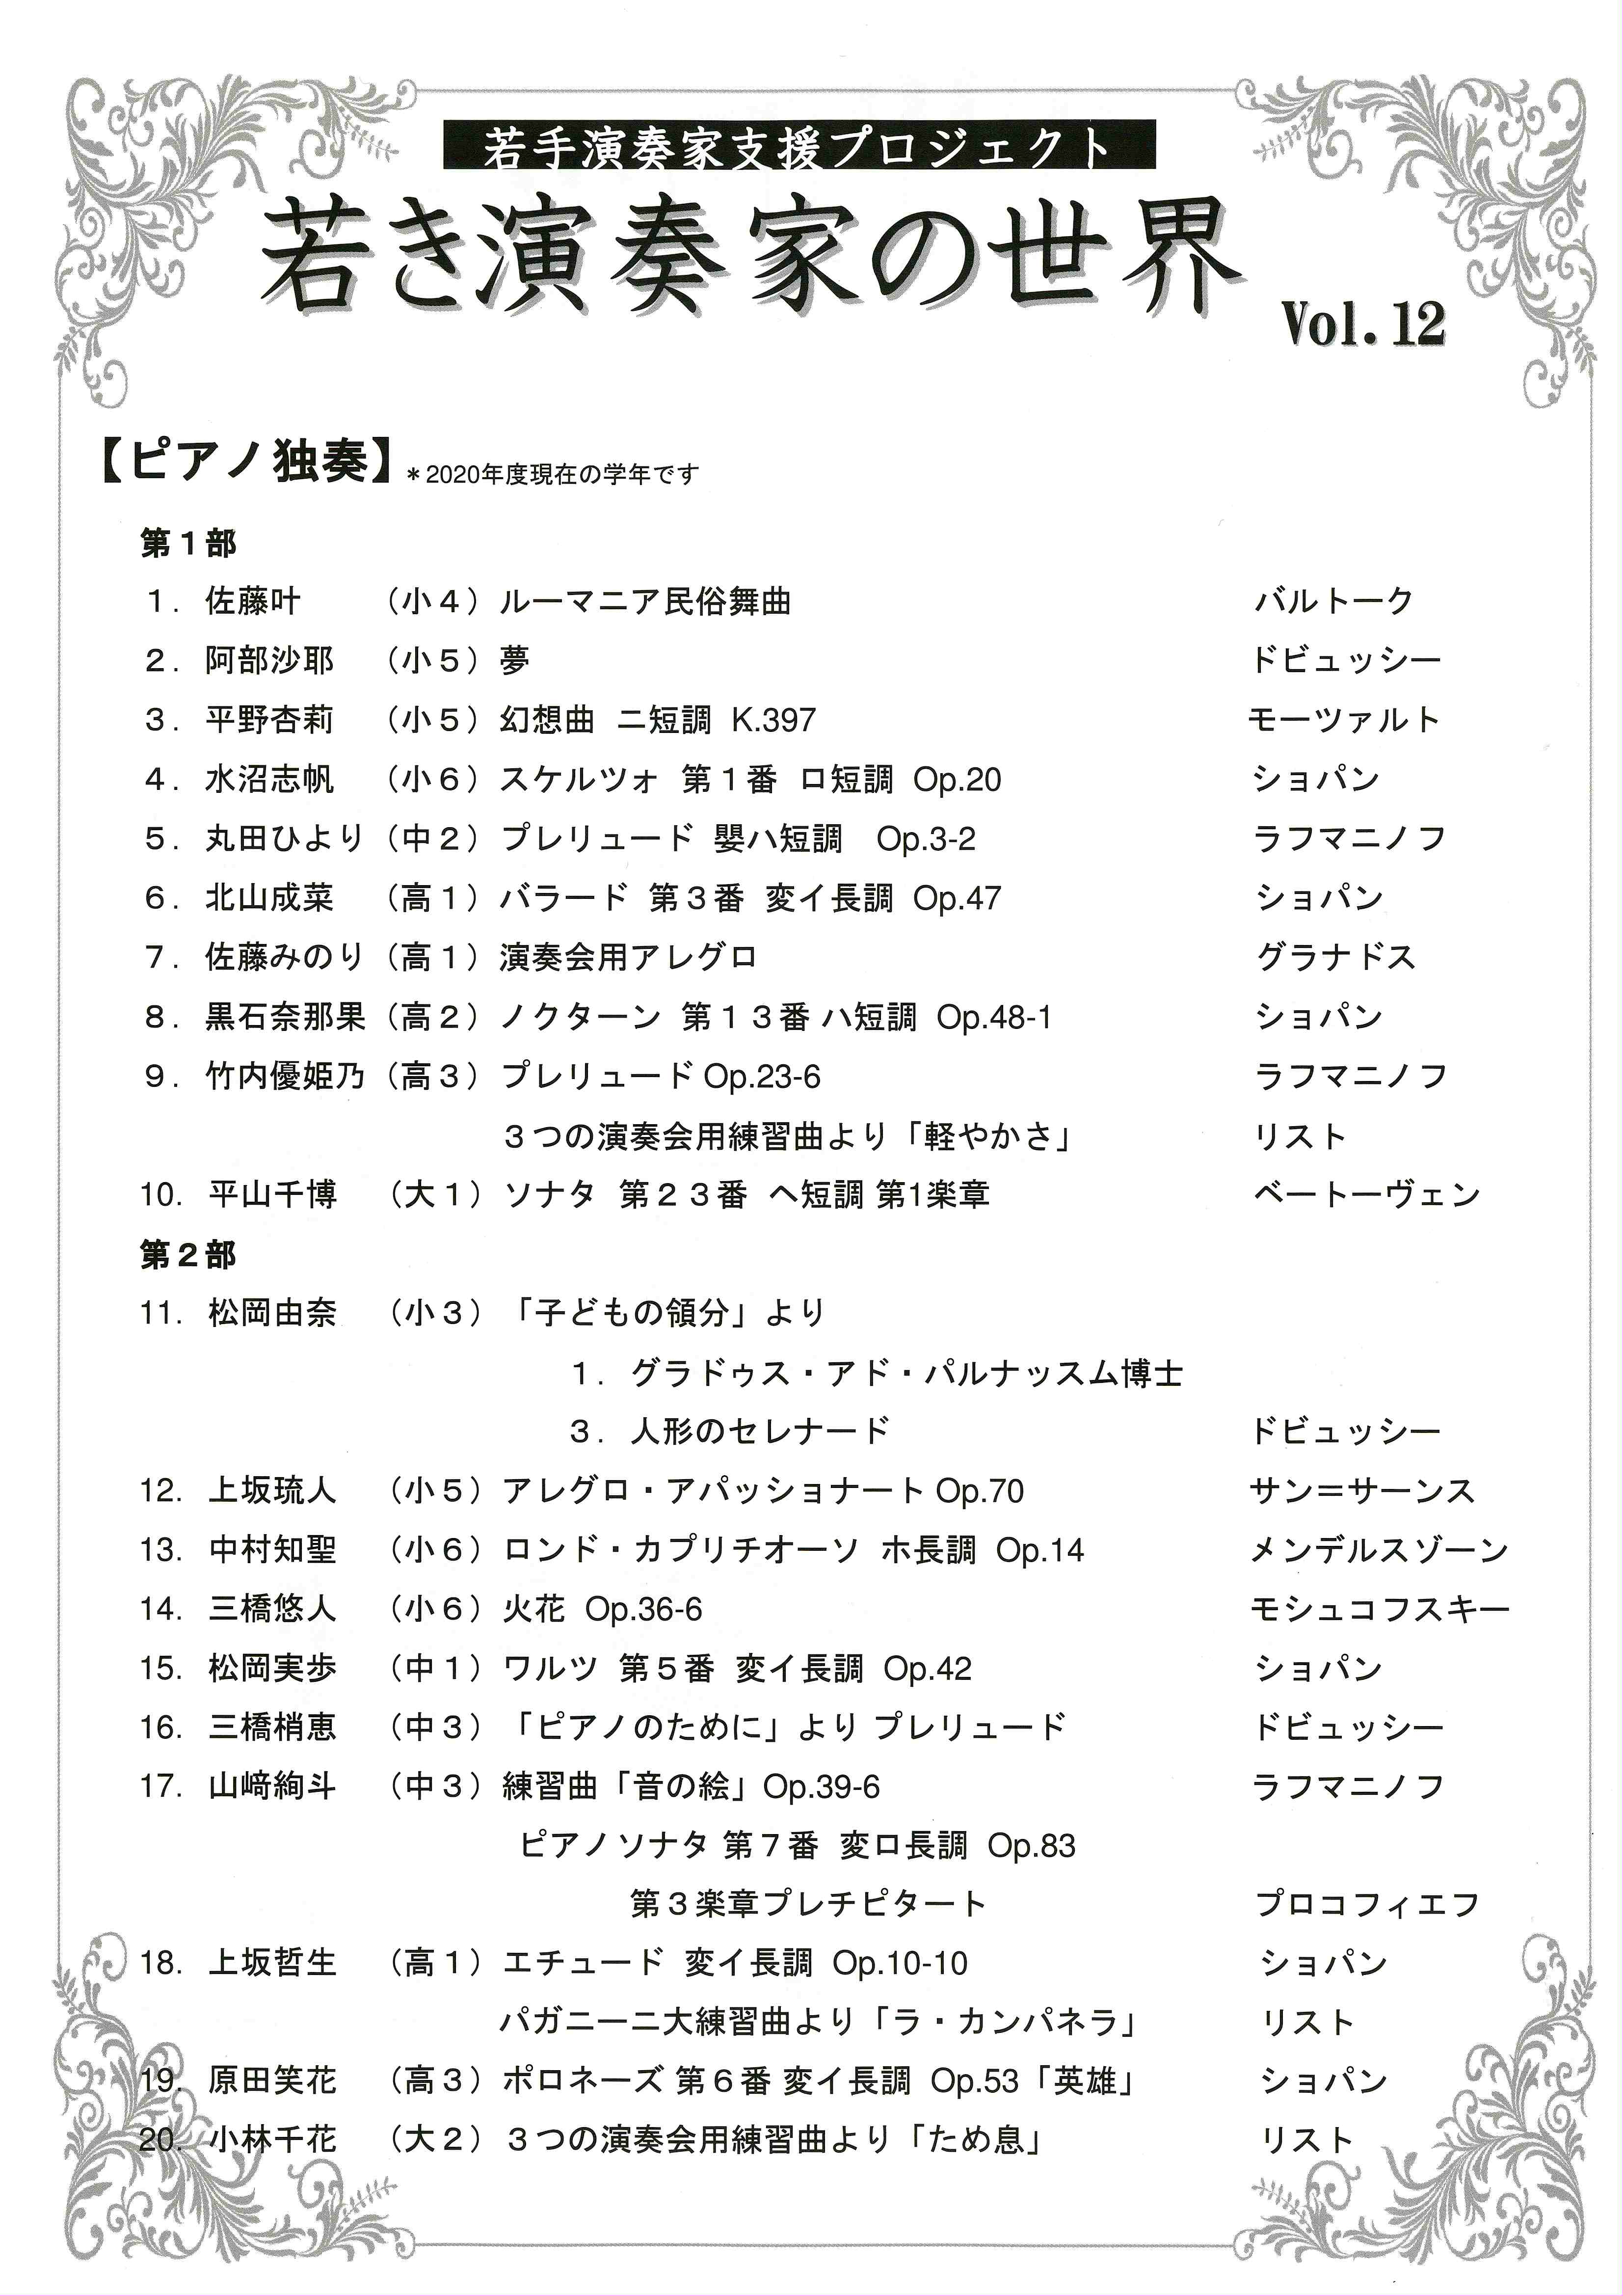 http://myoko-bunka.jp/news/SCAN-0771-2.jpg